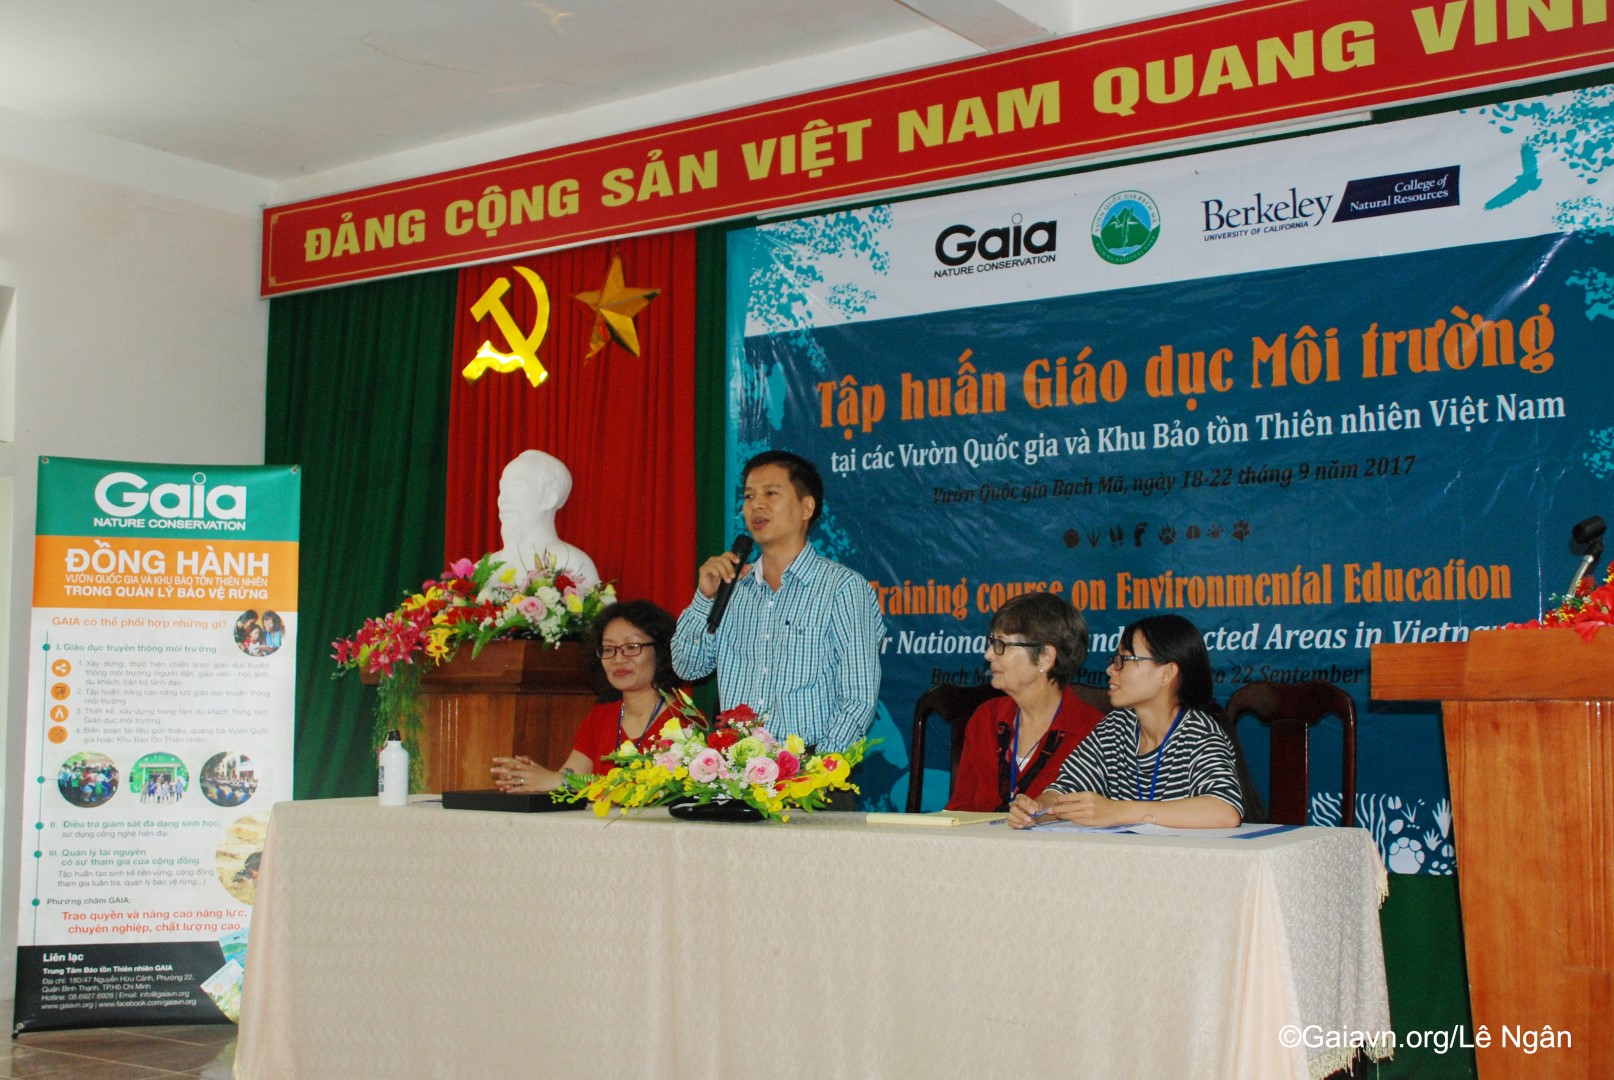 ng Nguyễn Vũ Linh – Phó Giám đốc Vườn quốc gia Bạch Mã, phát biểu khai mạc Tập huấn